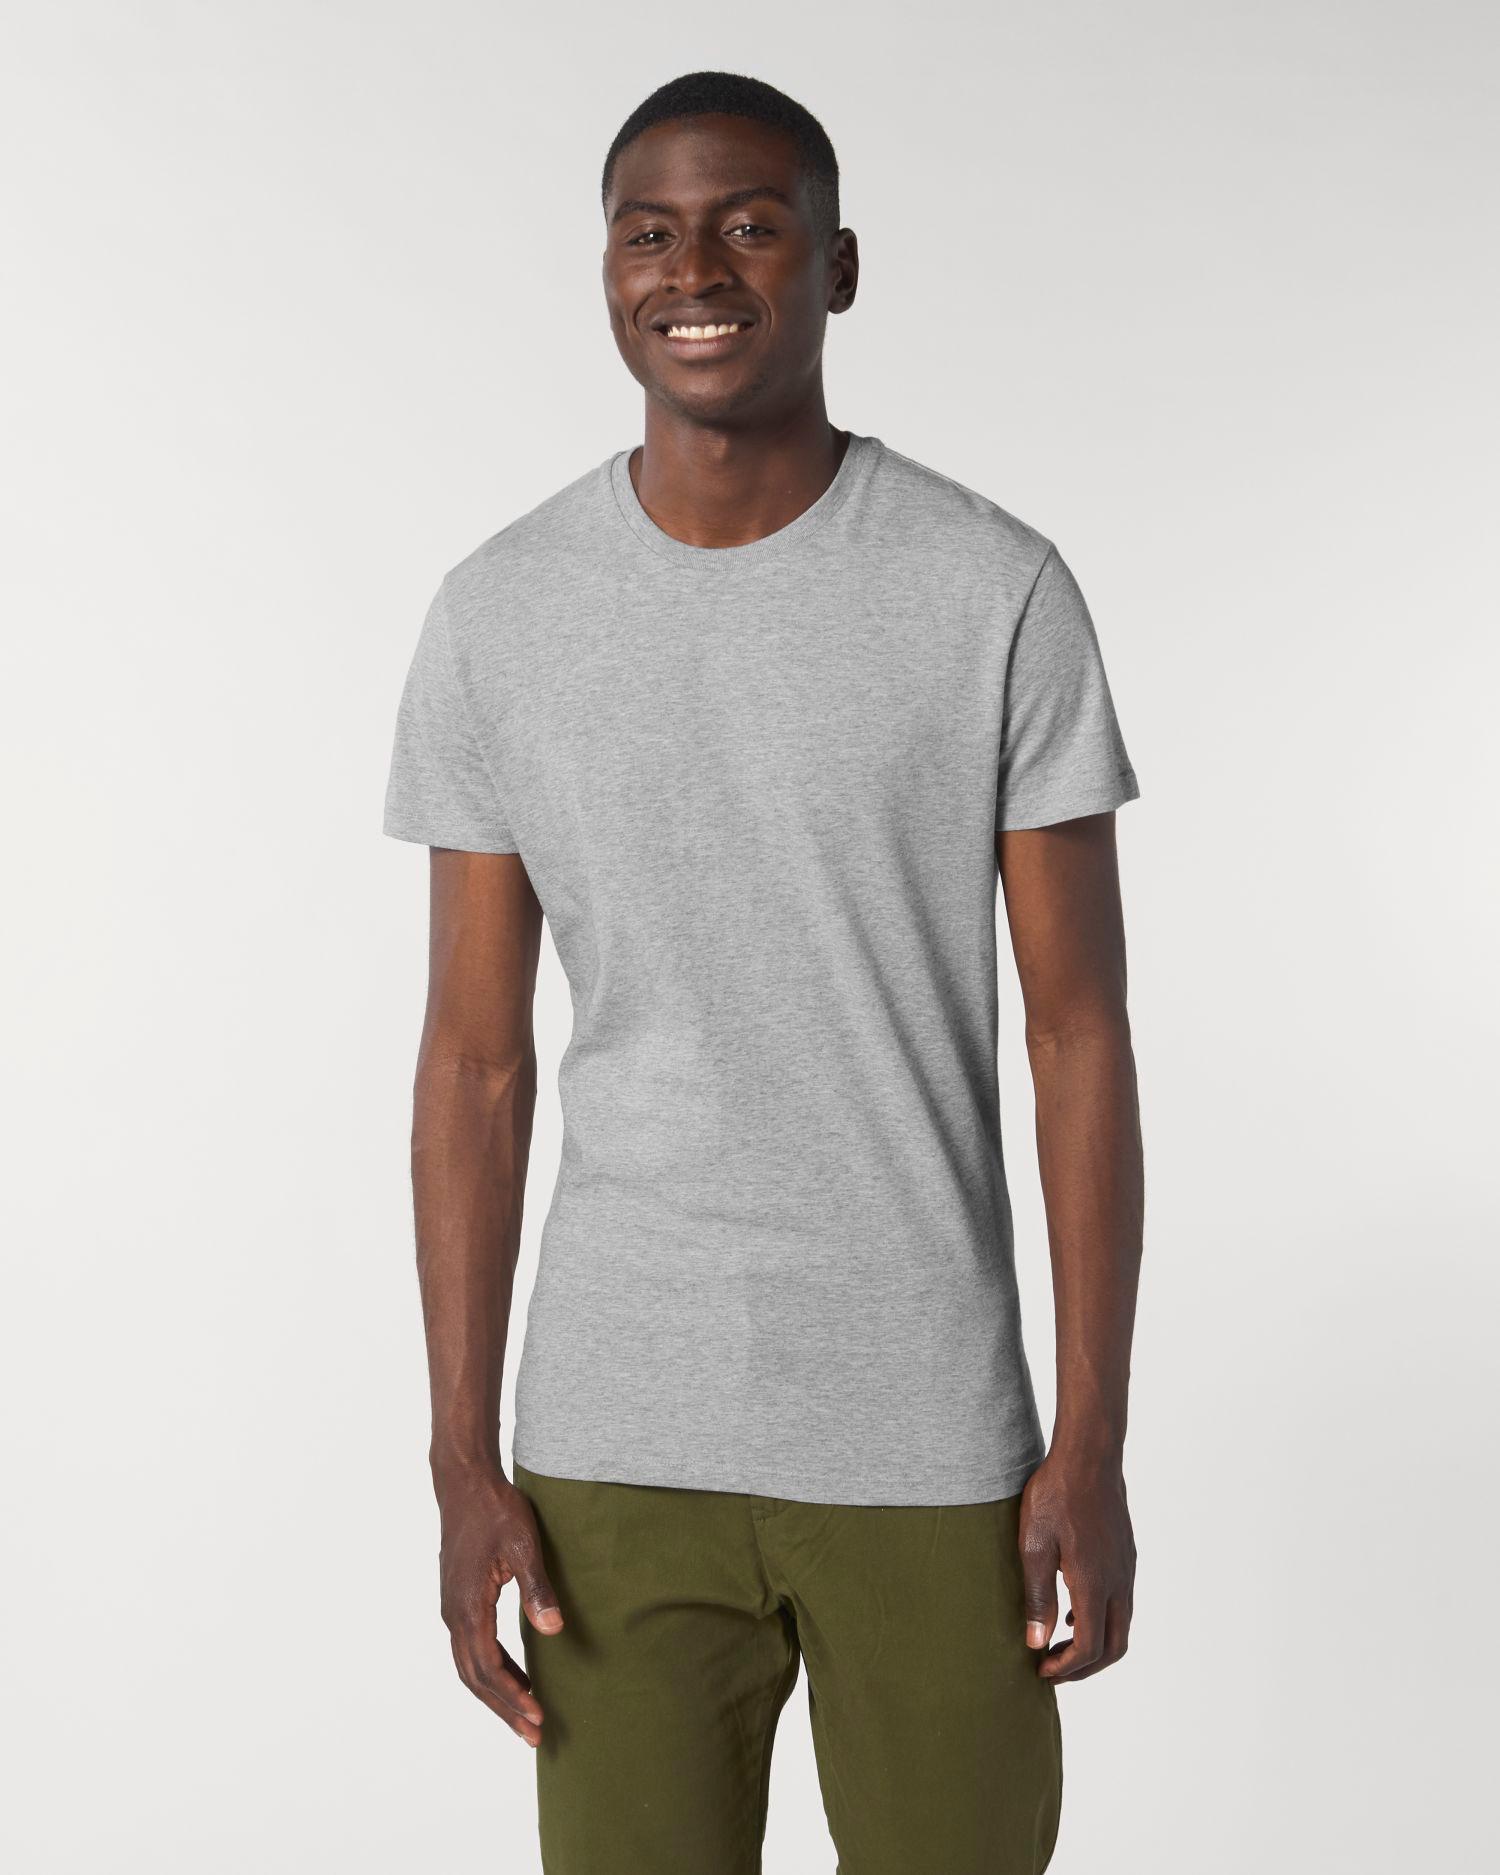 T-Shirt Pour Homme Moulant 100% Coton Bio Doux Et Confortable Dark Heather Grey